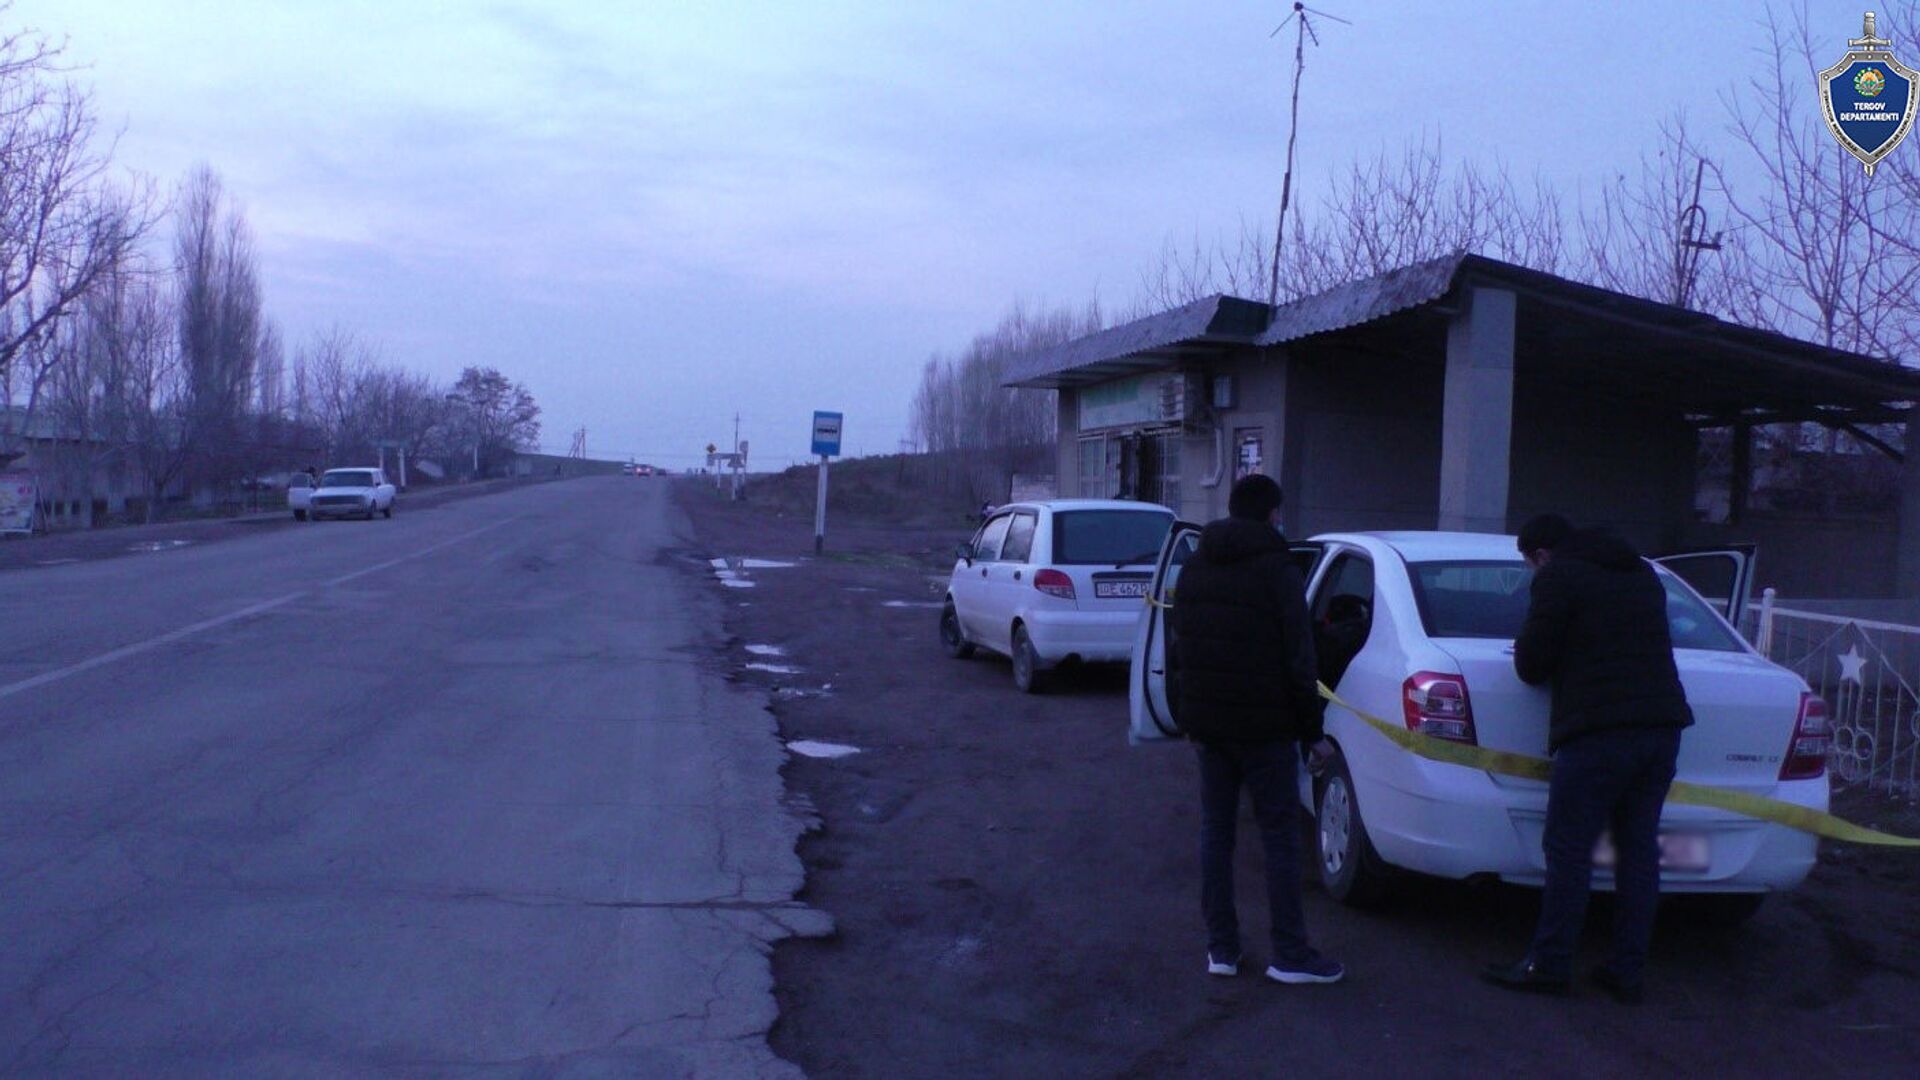 Ташкентцы спасли таксиста от подростка с ножом - Sputnik Узбекистан, 1920, 04.02.2021